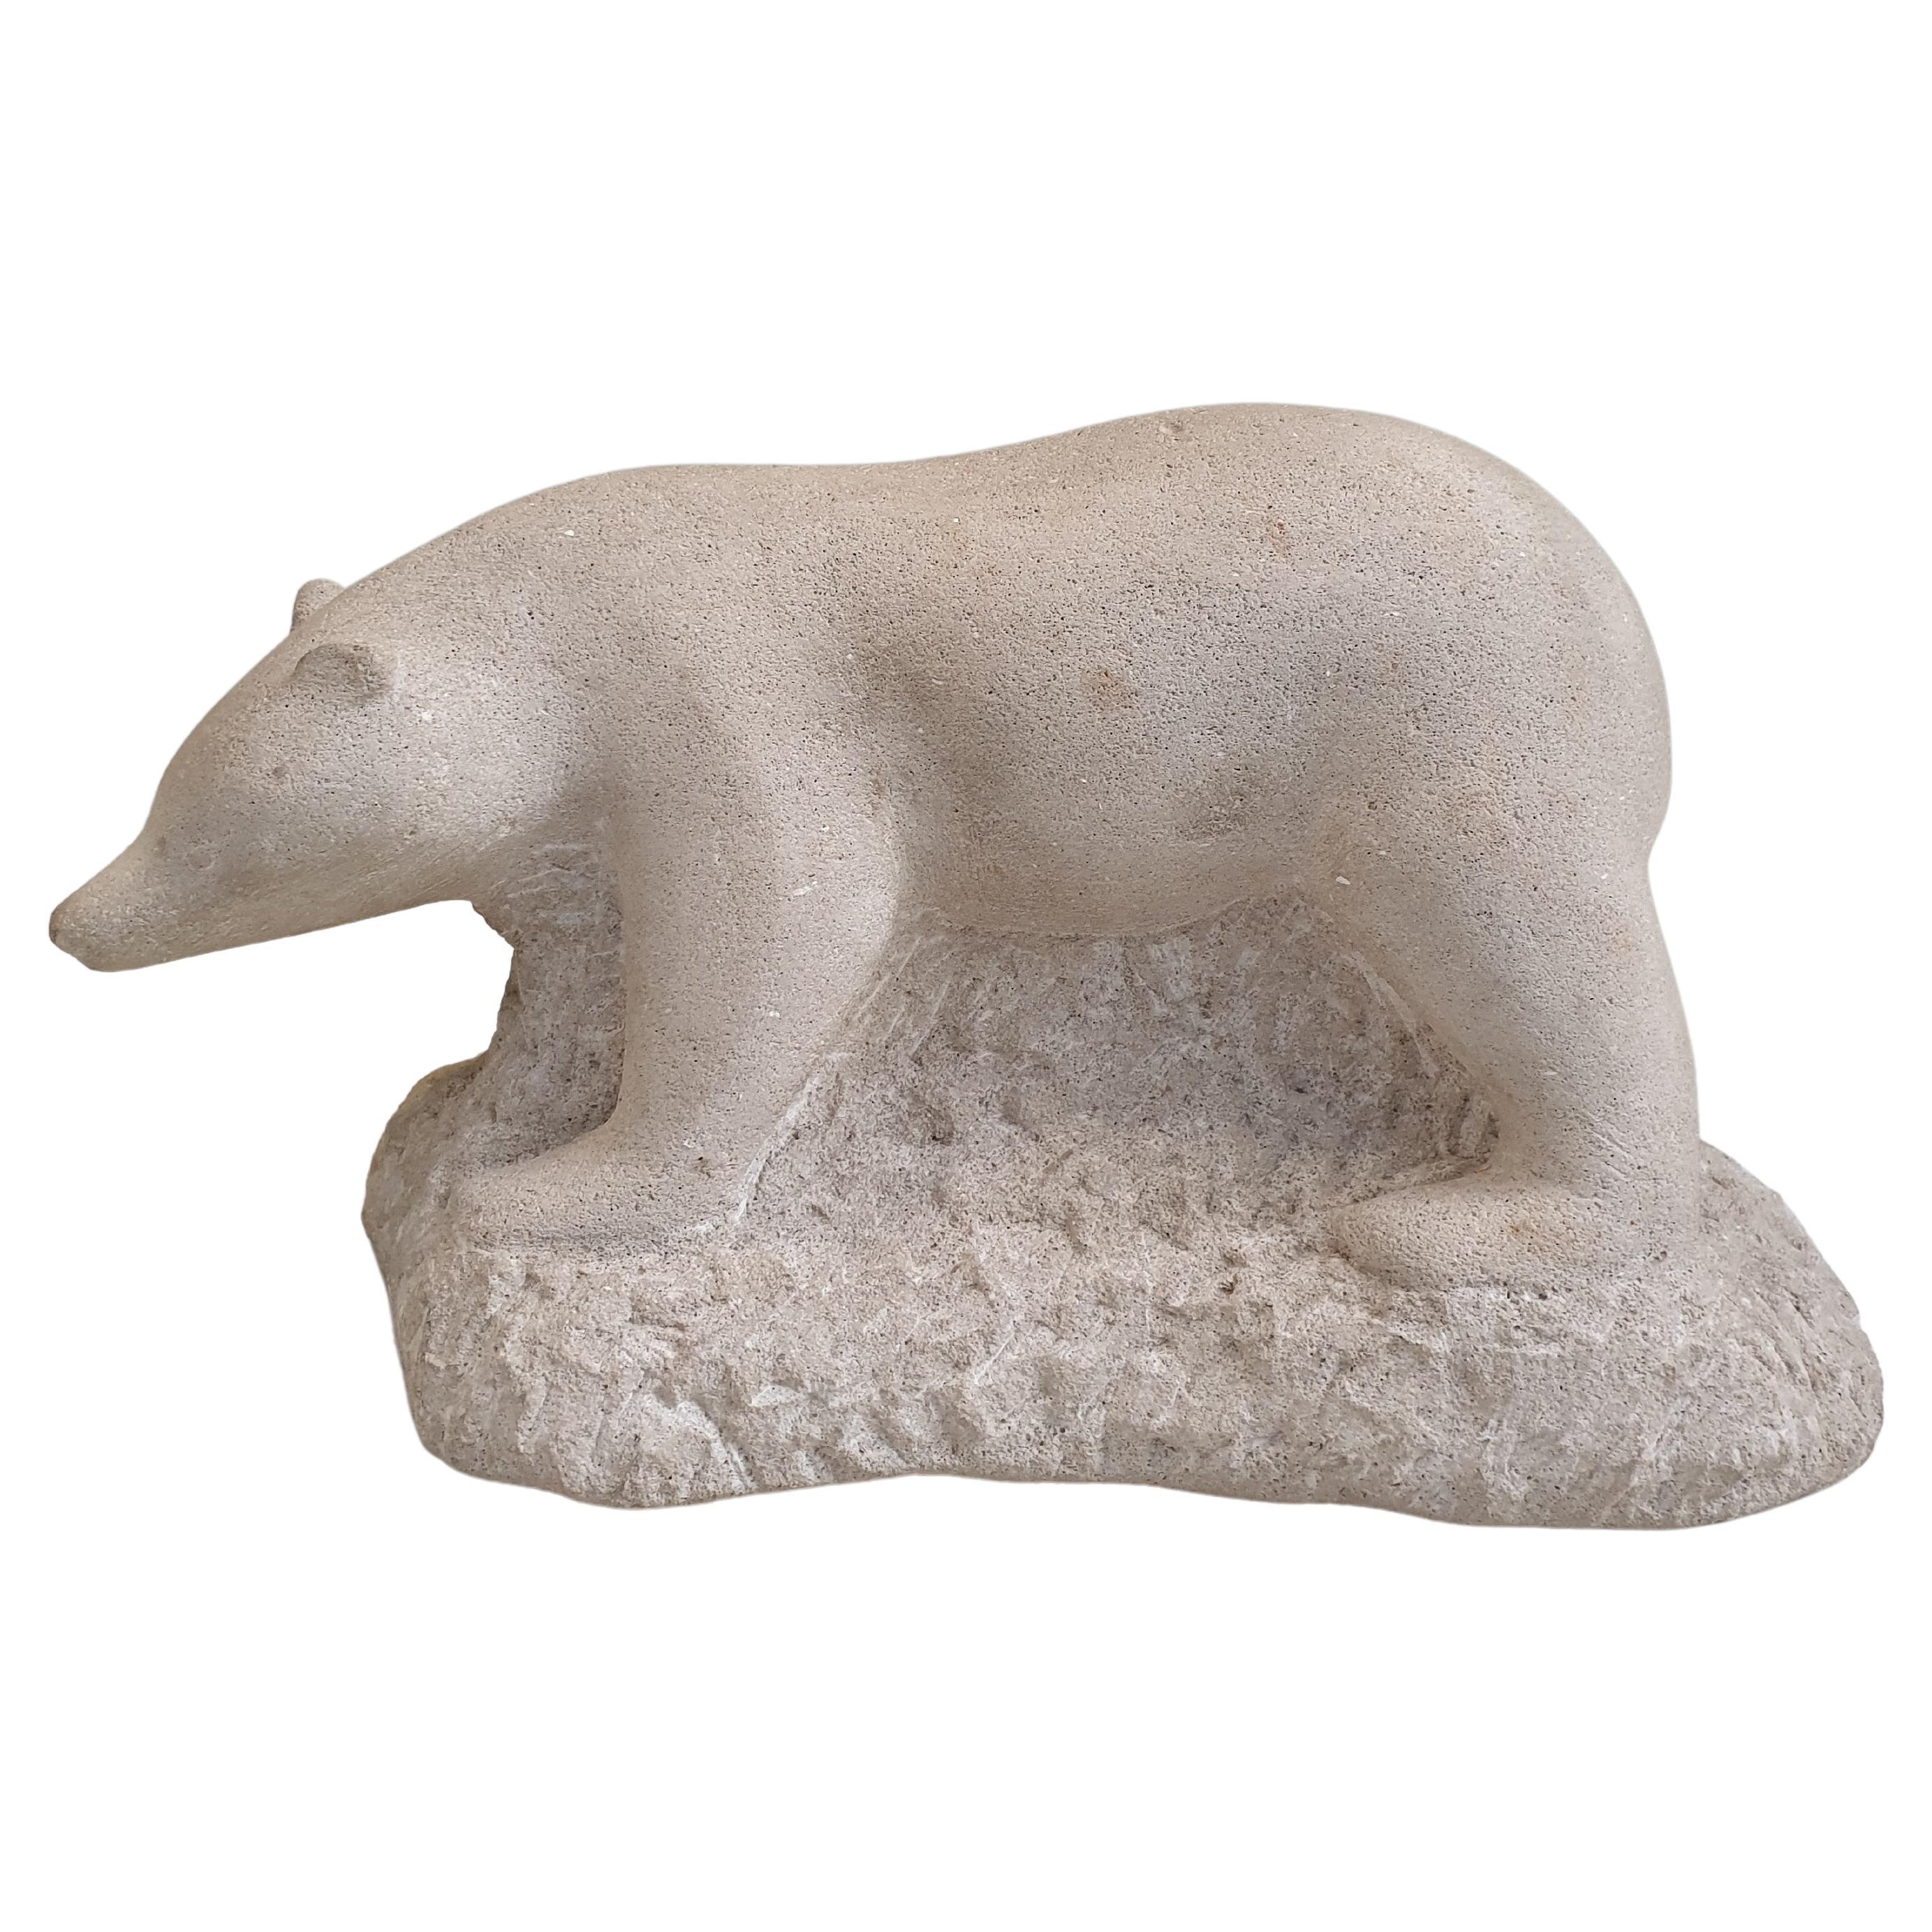 Geschnitzte Steinskulptur eines Eisbären, signiert.